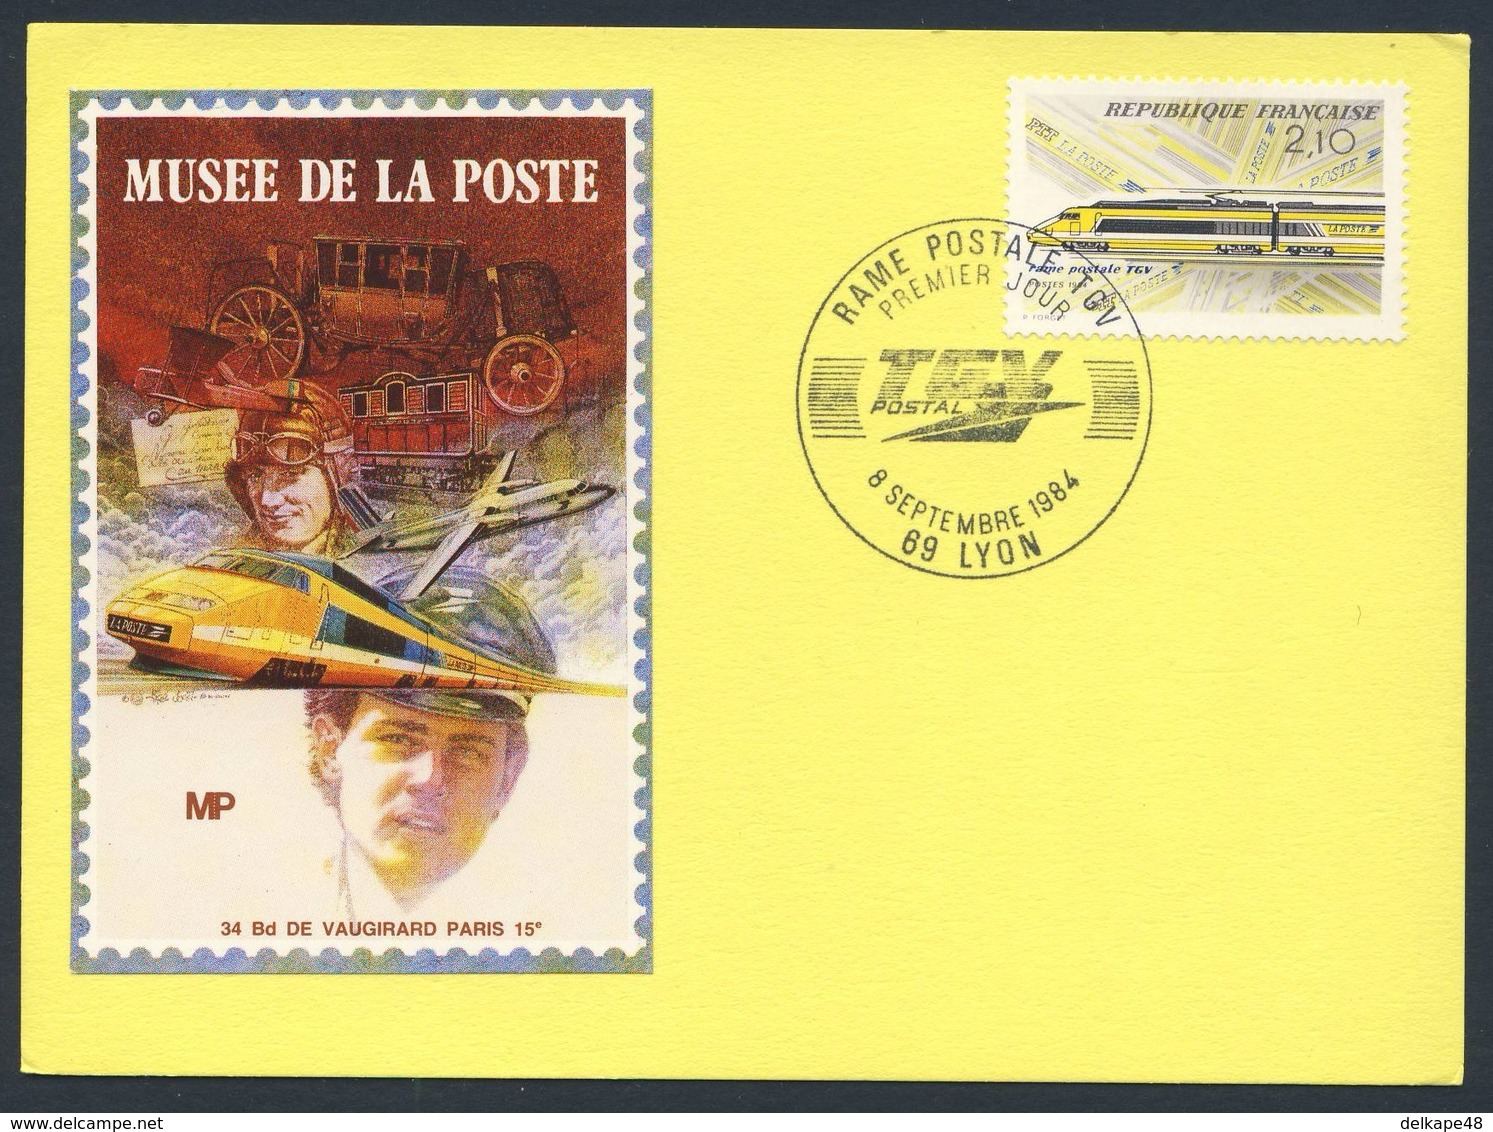 France Rep. Française 1984 Card / Karte / Carte Postale - Rame Postale TGV, Lyon - Musee De La Poste - Premier Jour - Treinen